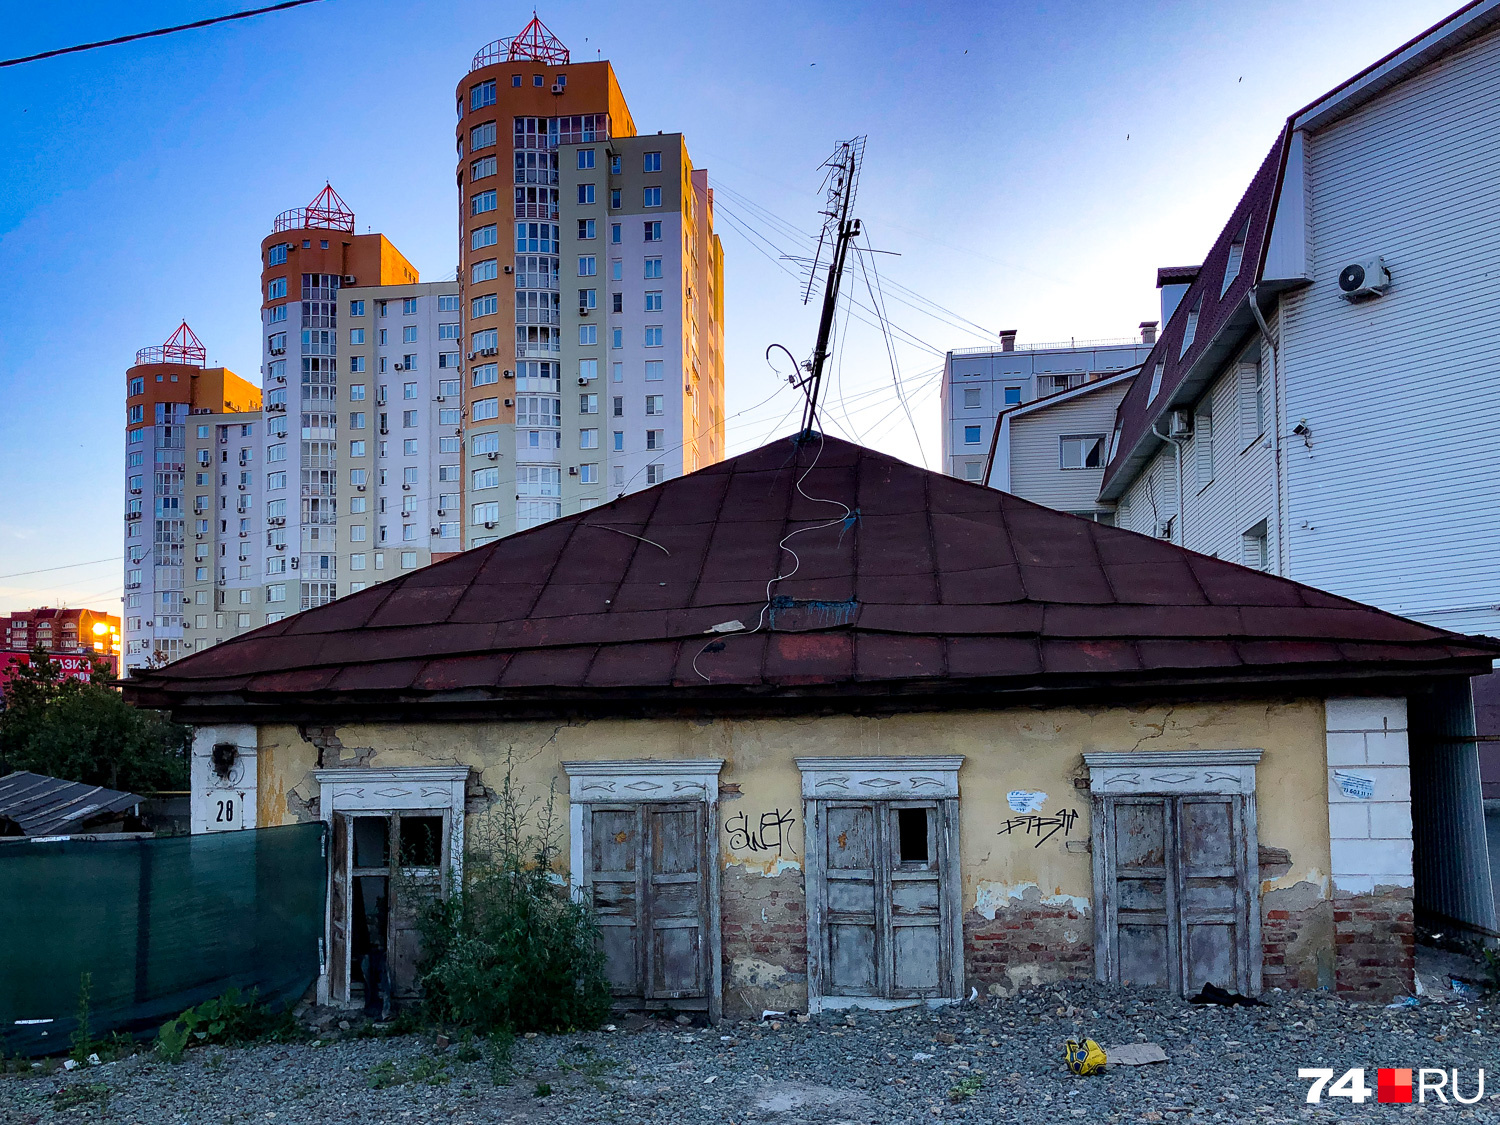 Старый Челябинск уходит под землю